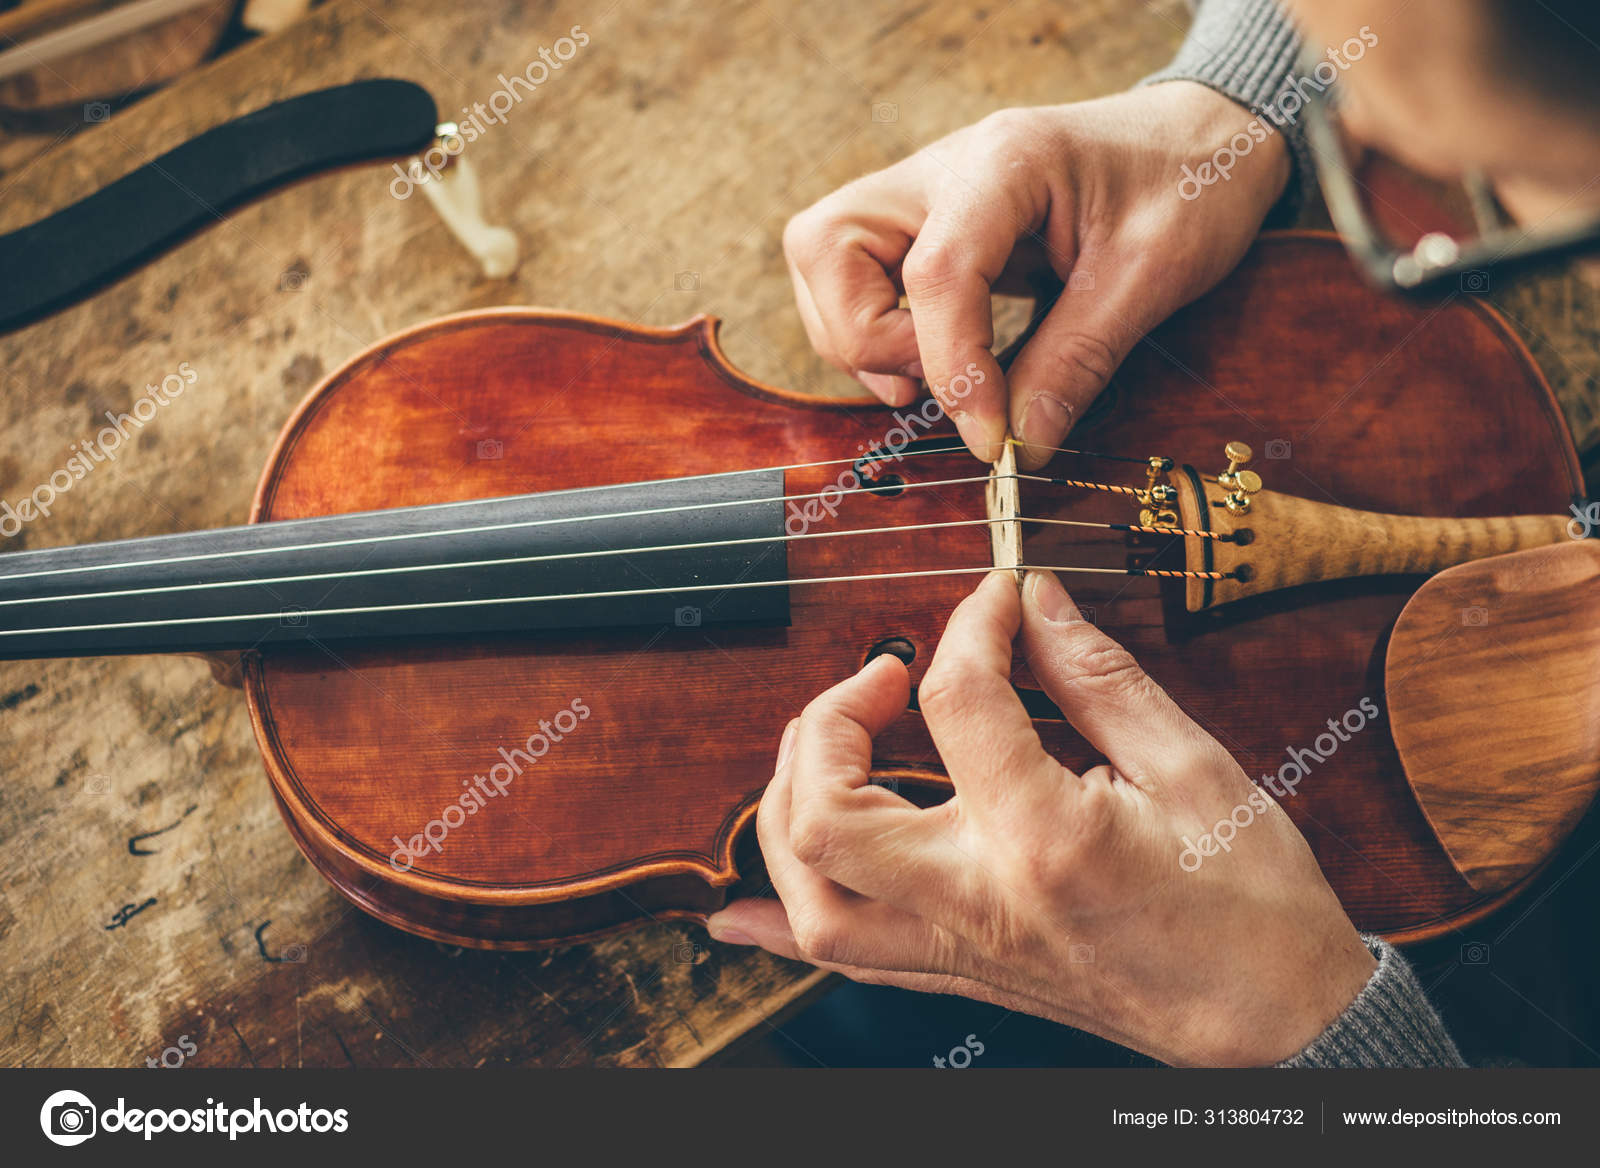 genéticamente definido vértice Luthier repair violin in his workshop Stock Photo by ©nioloxs 313804732